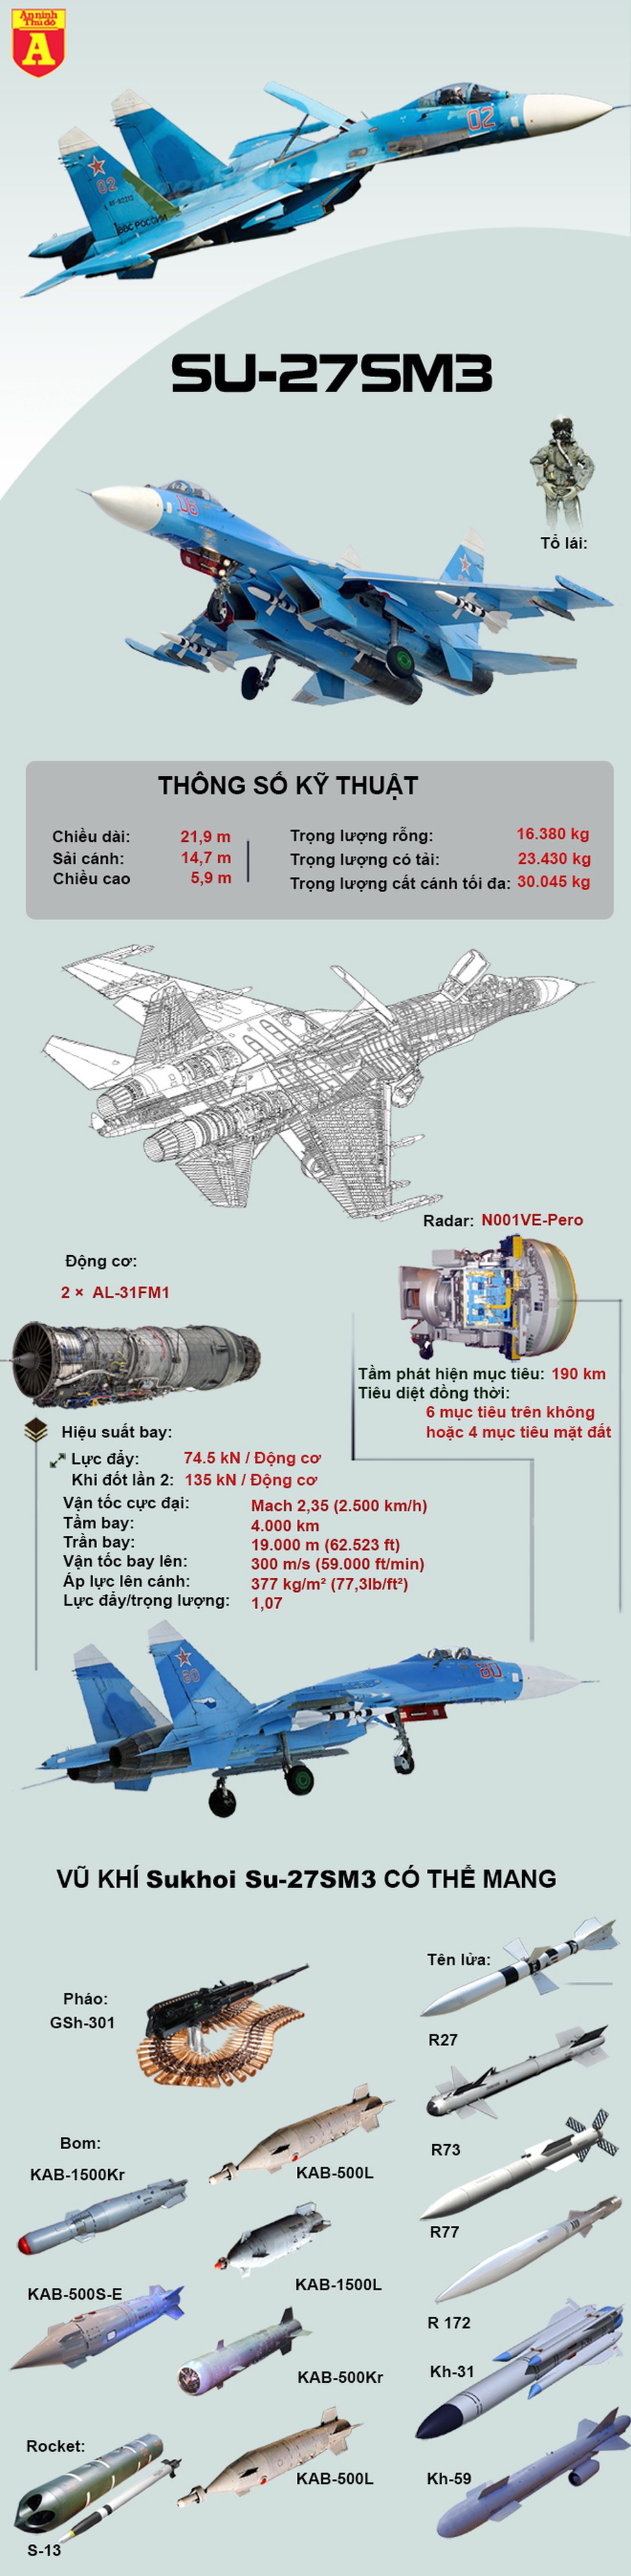 [Infographics] Nga điều chiến đấu cơ Su-27SM3 đánh chặn F-16 Thổ Nhĩ Kỳ tại Syria? - Ảnh 1